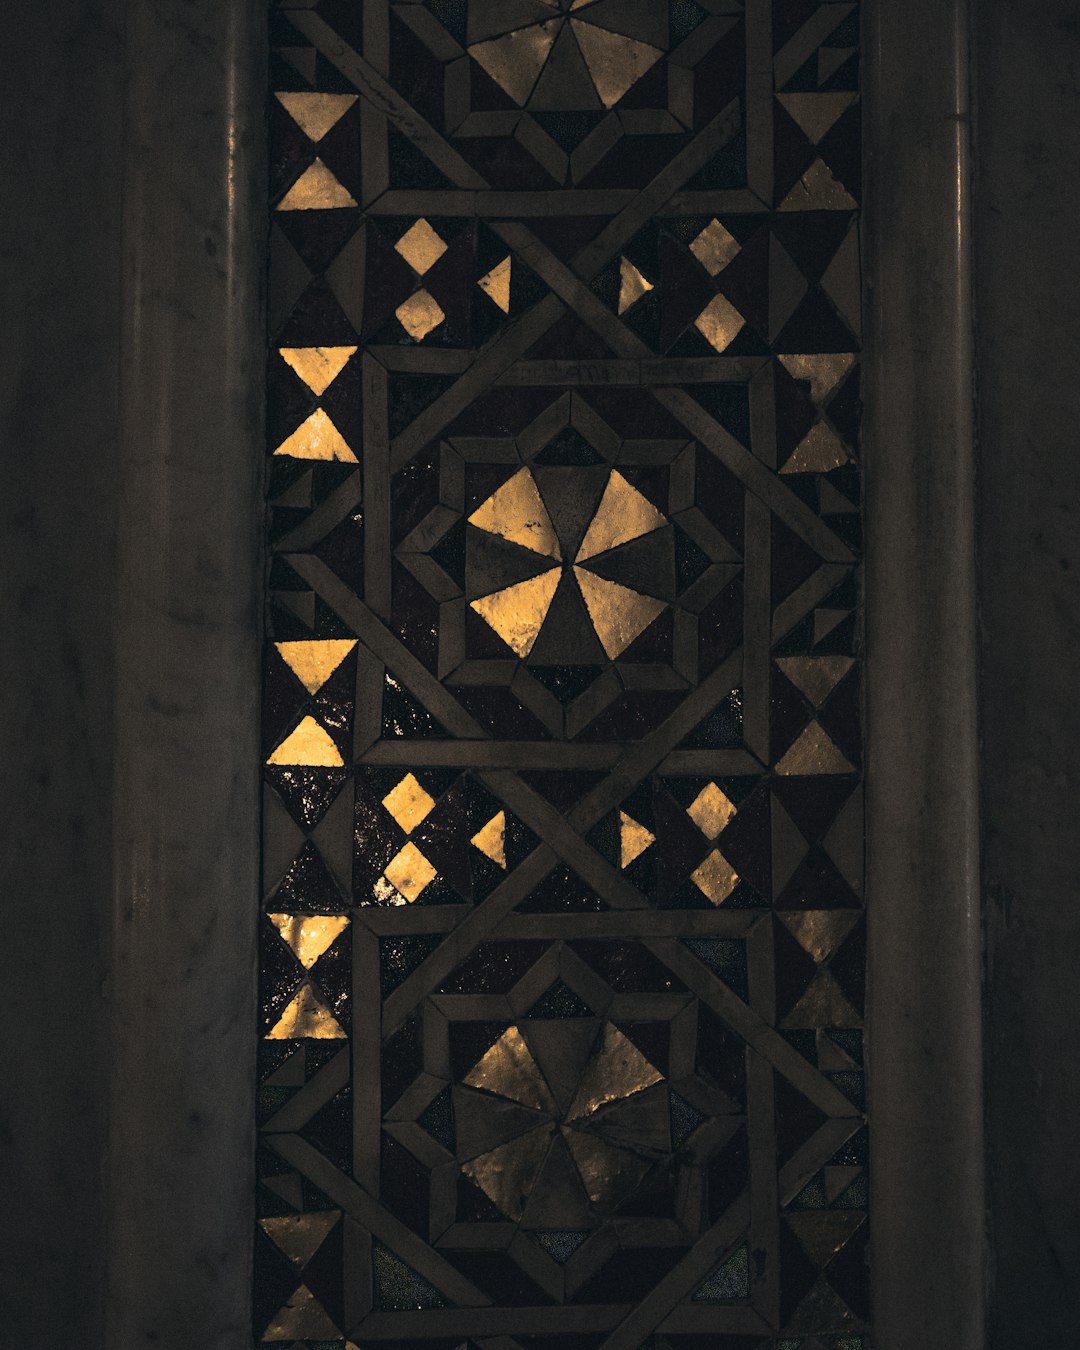 brown wooden door with gold door lever